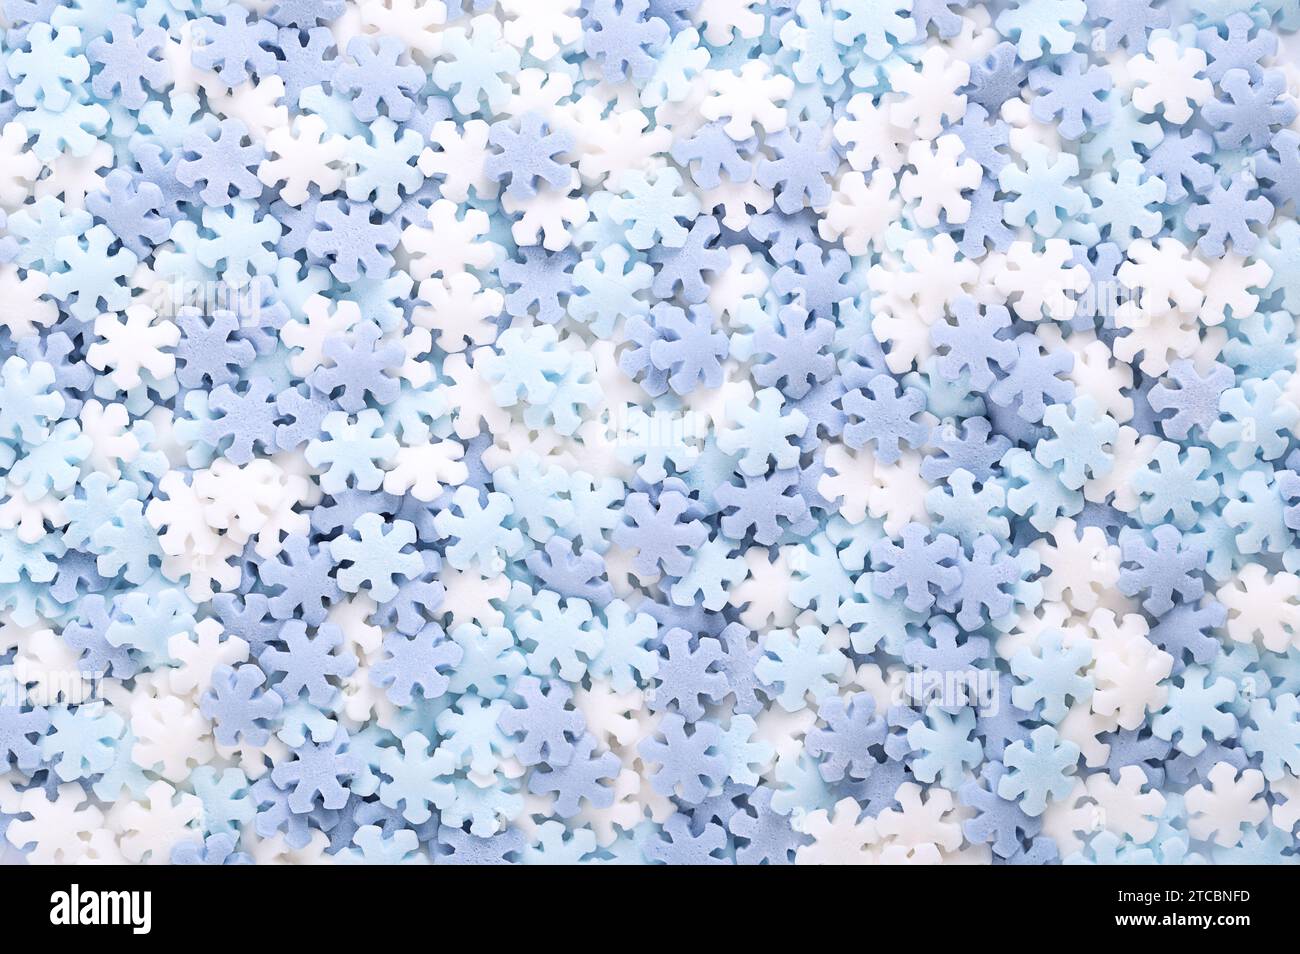 Schneeflockenförmige Zuckerstreusel. Hintergrund von blauen und weißen Konfetti-Bonbons, Süßwaren aus Zucker und Reis, bestehend aus flachen Süßigkeiten-Streuseln. Stockfoto